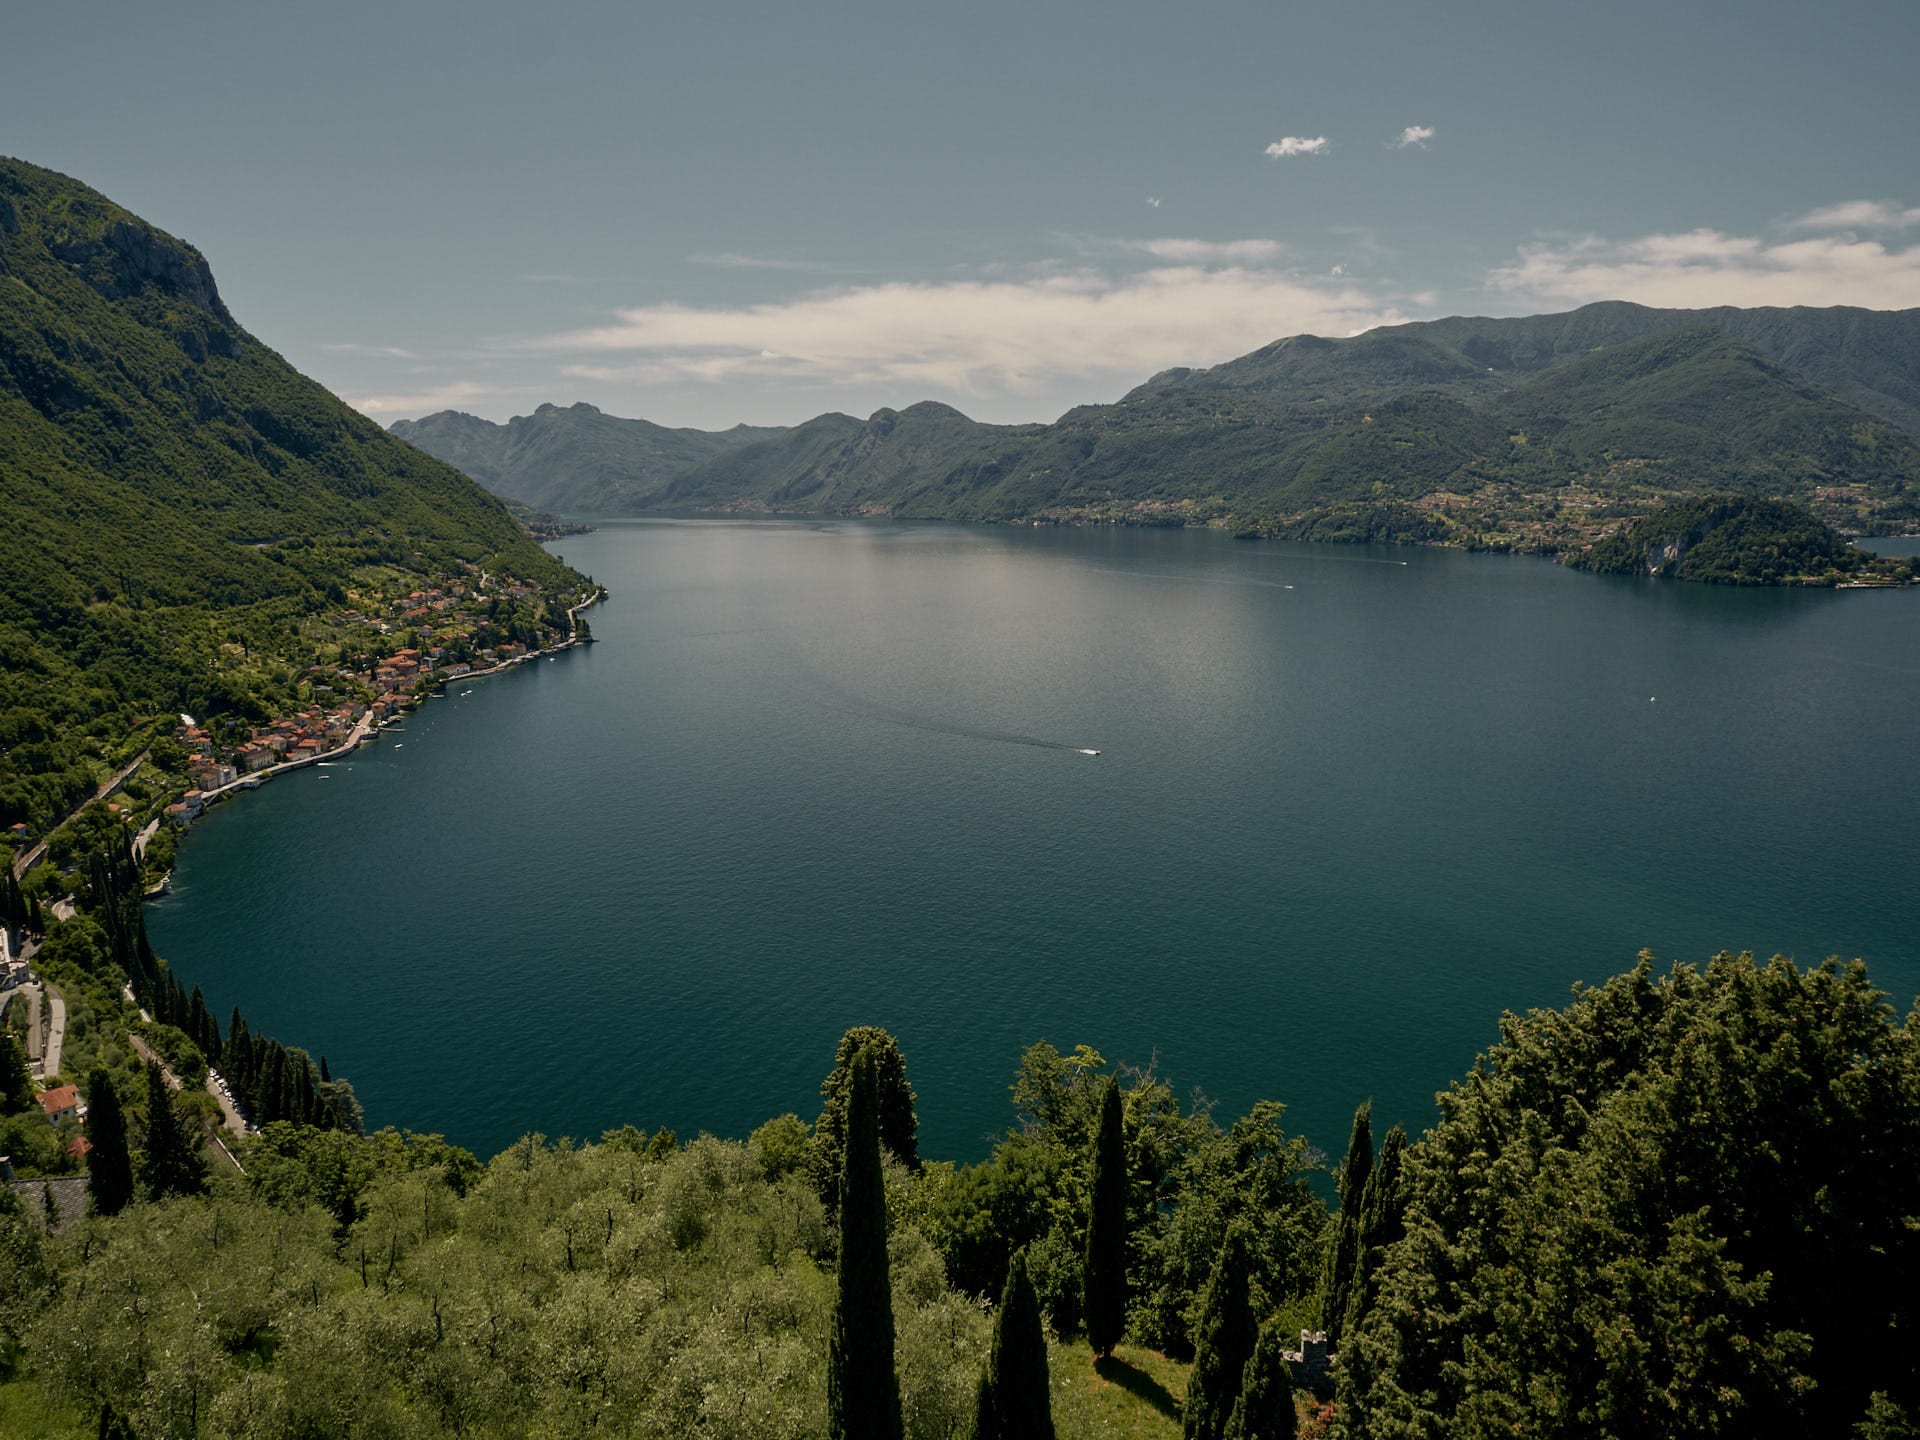 Jezioro Como, Varenna, Bellagio i Menaggio